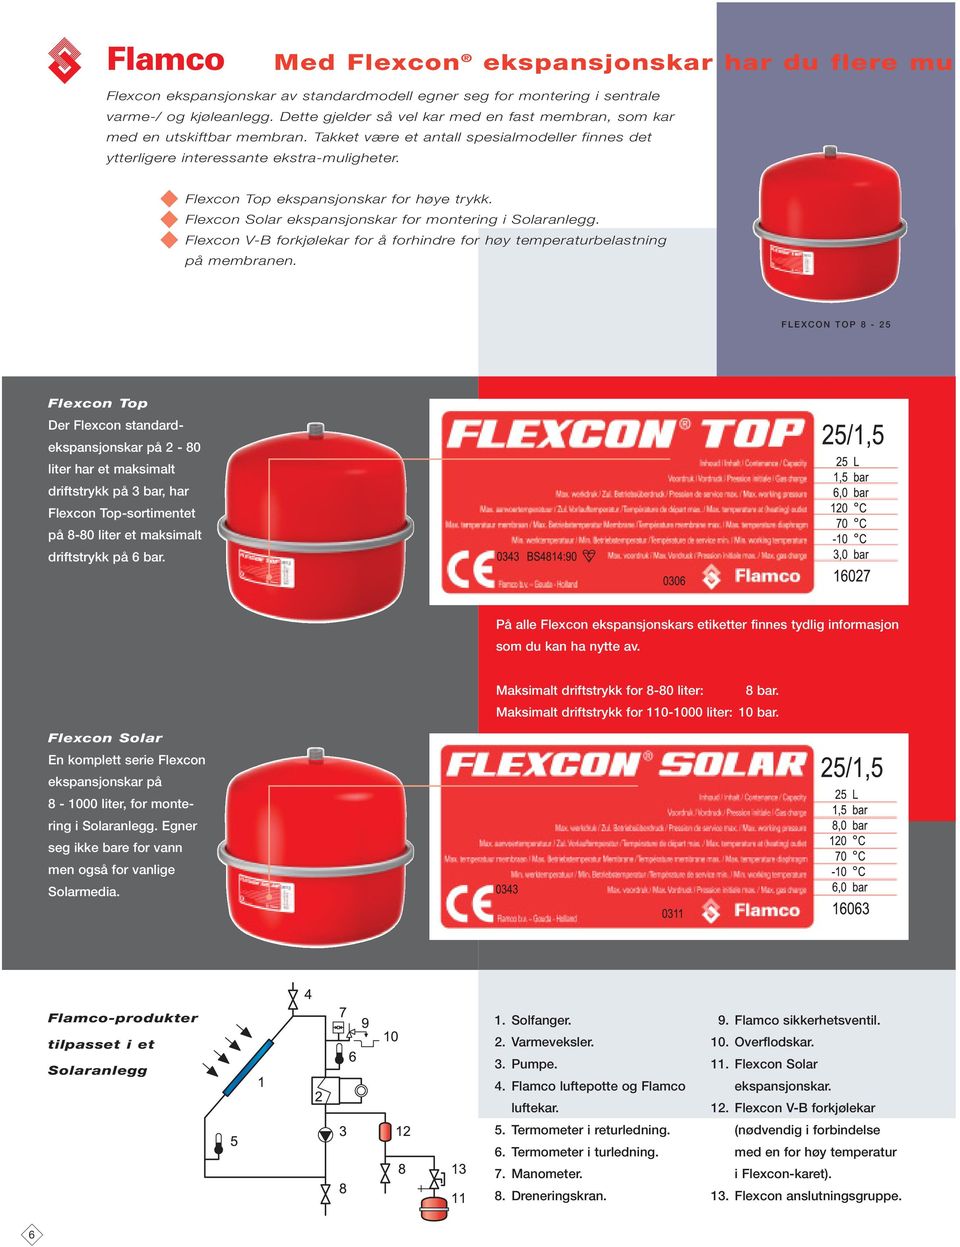 Flexcon Top ekspansjonskar for høye trykk. Flexcon Solar ekspansjonskar for montering i Solaranlegg. Flexcon V-B forkjølekar for å forhindre for høy temperaturbelastning på membranen.